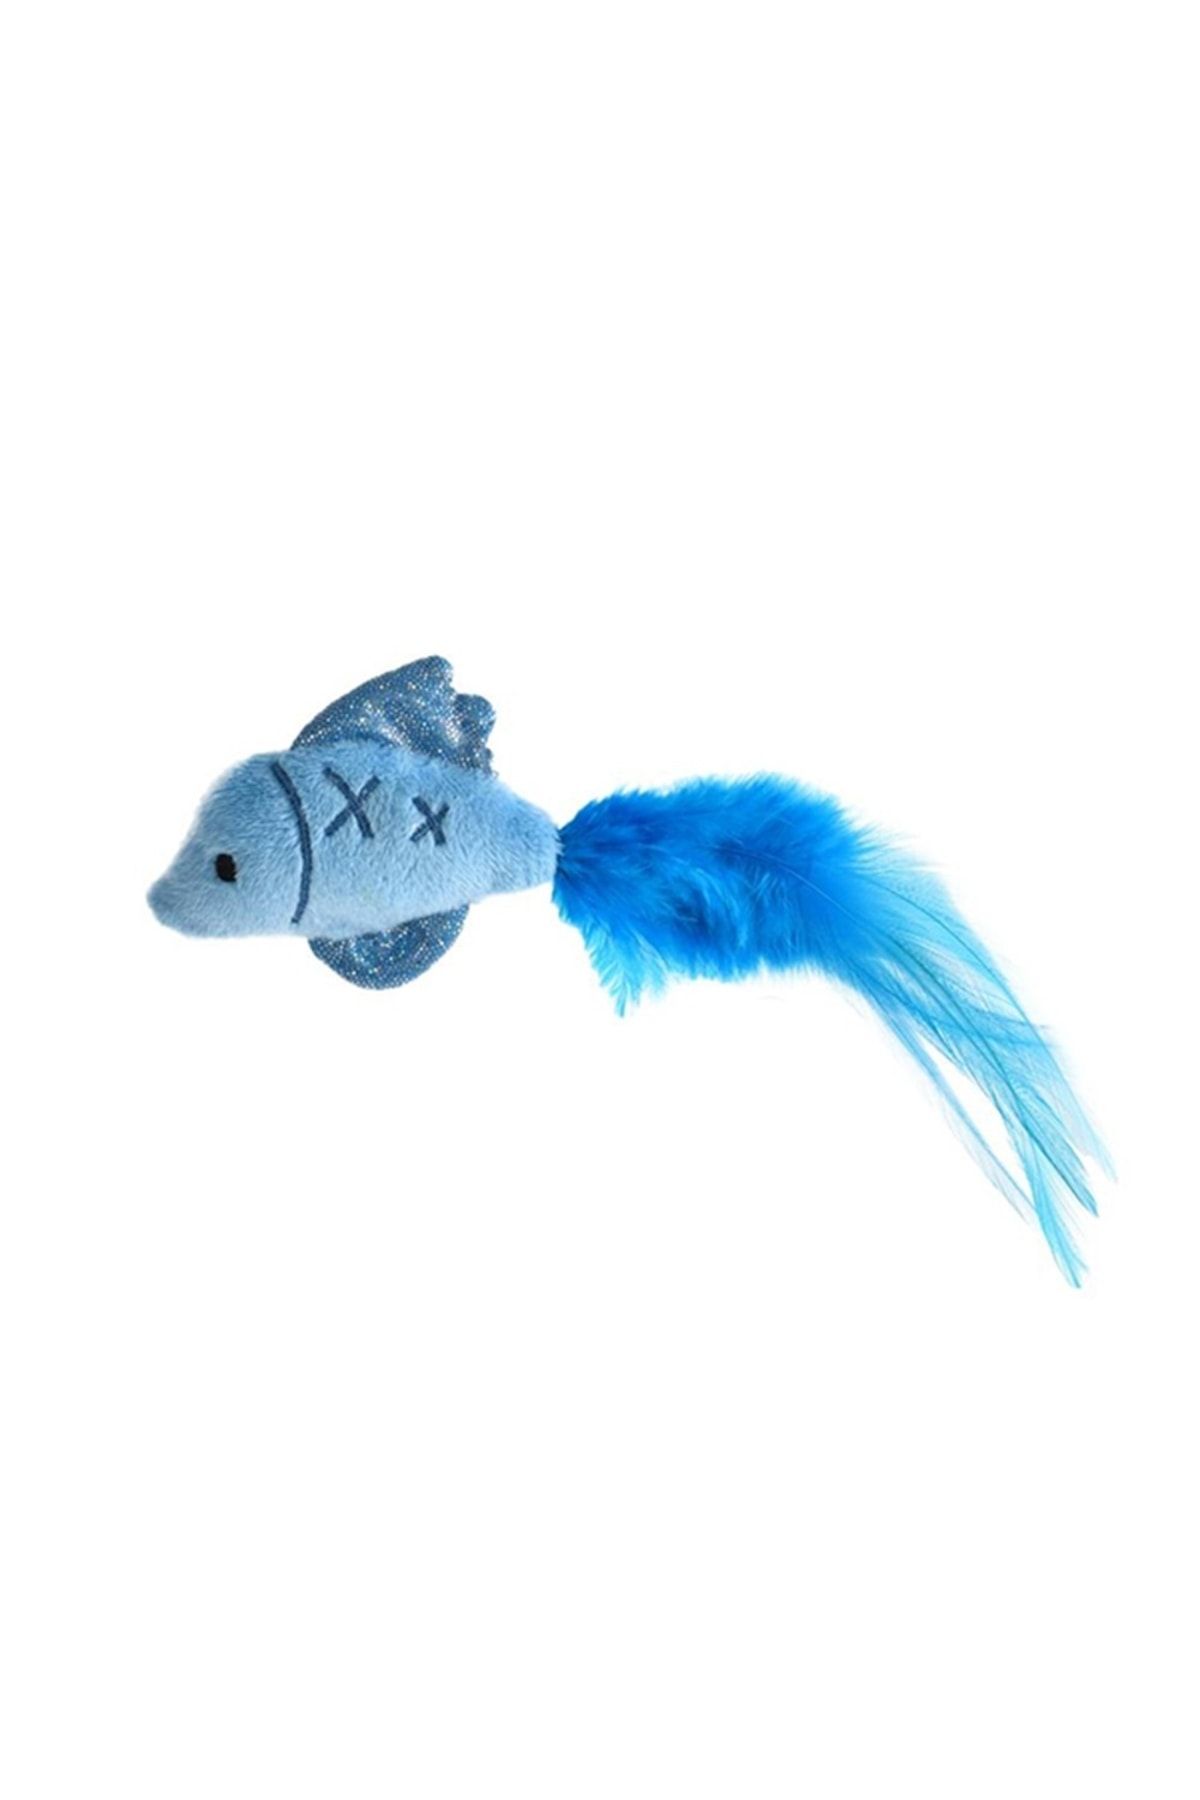 Zampa Mavi Tüylü Peluş Balık Kedi Oyuncağı,18x5,5 Cm